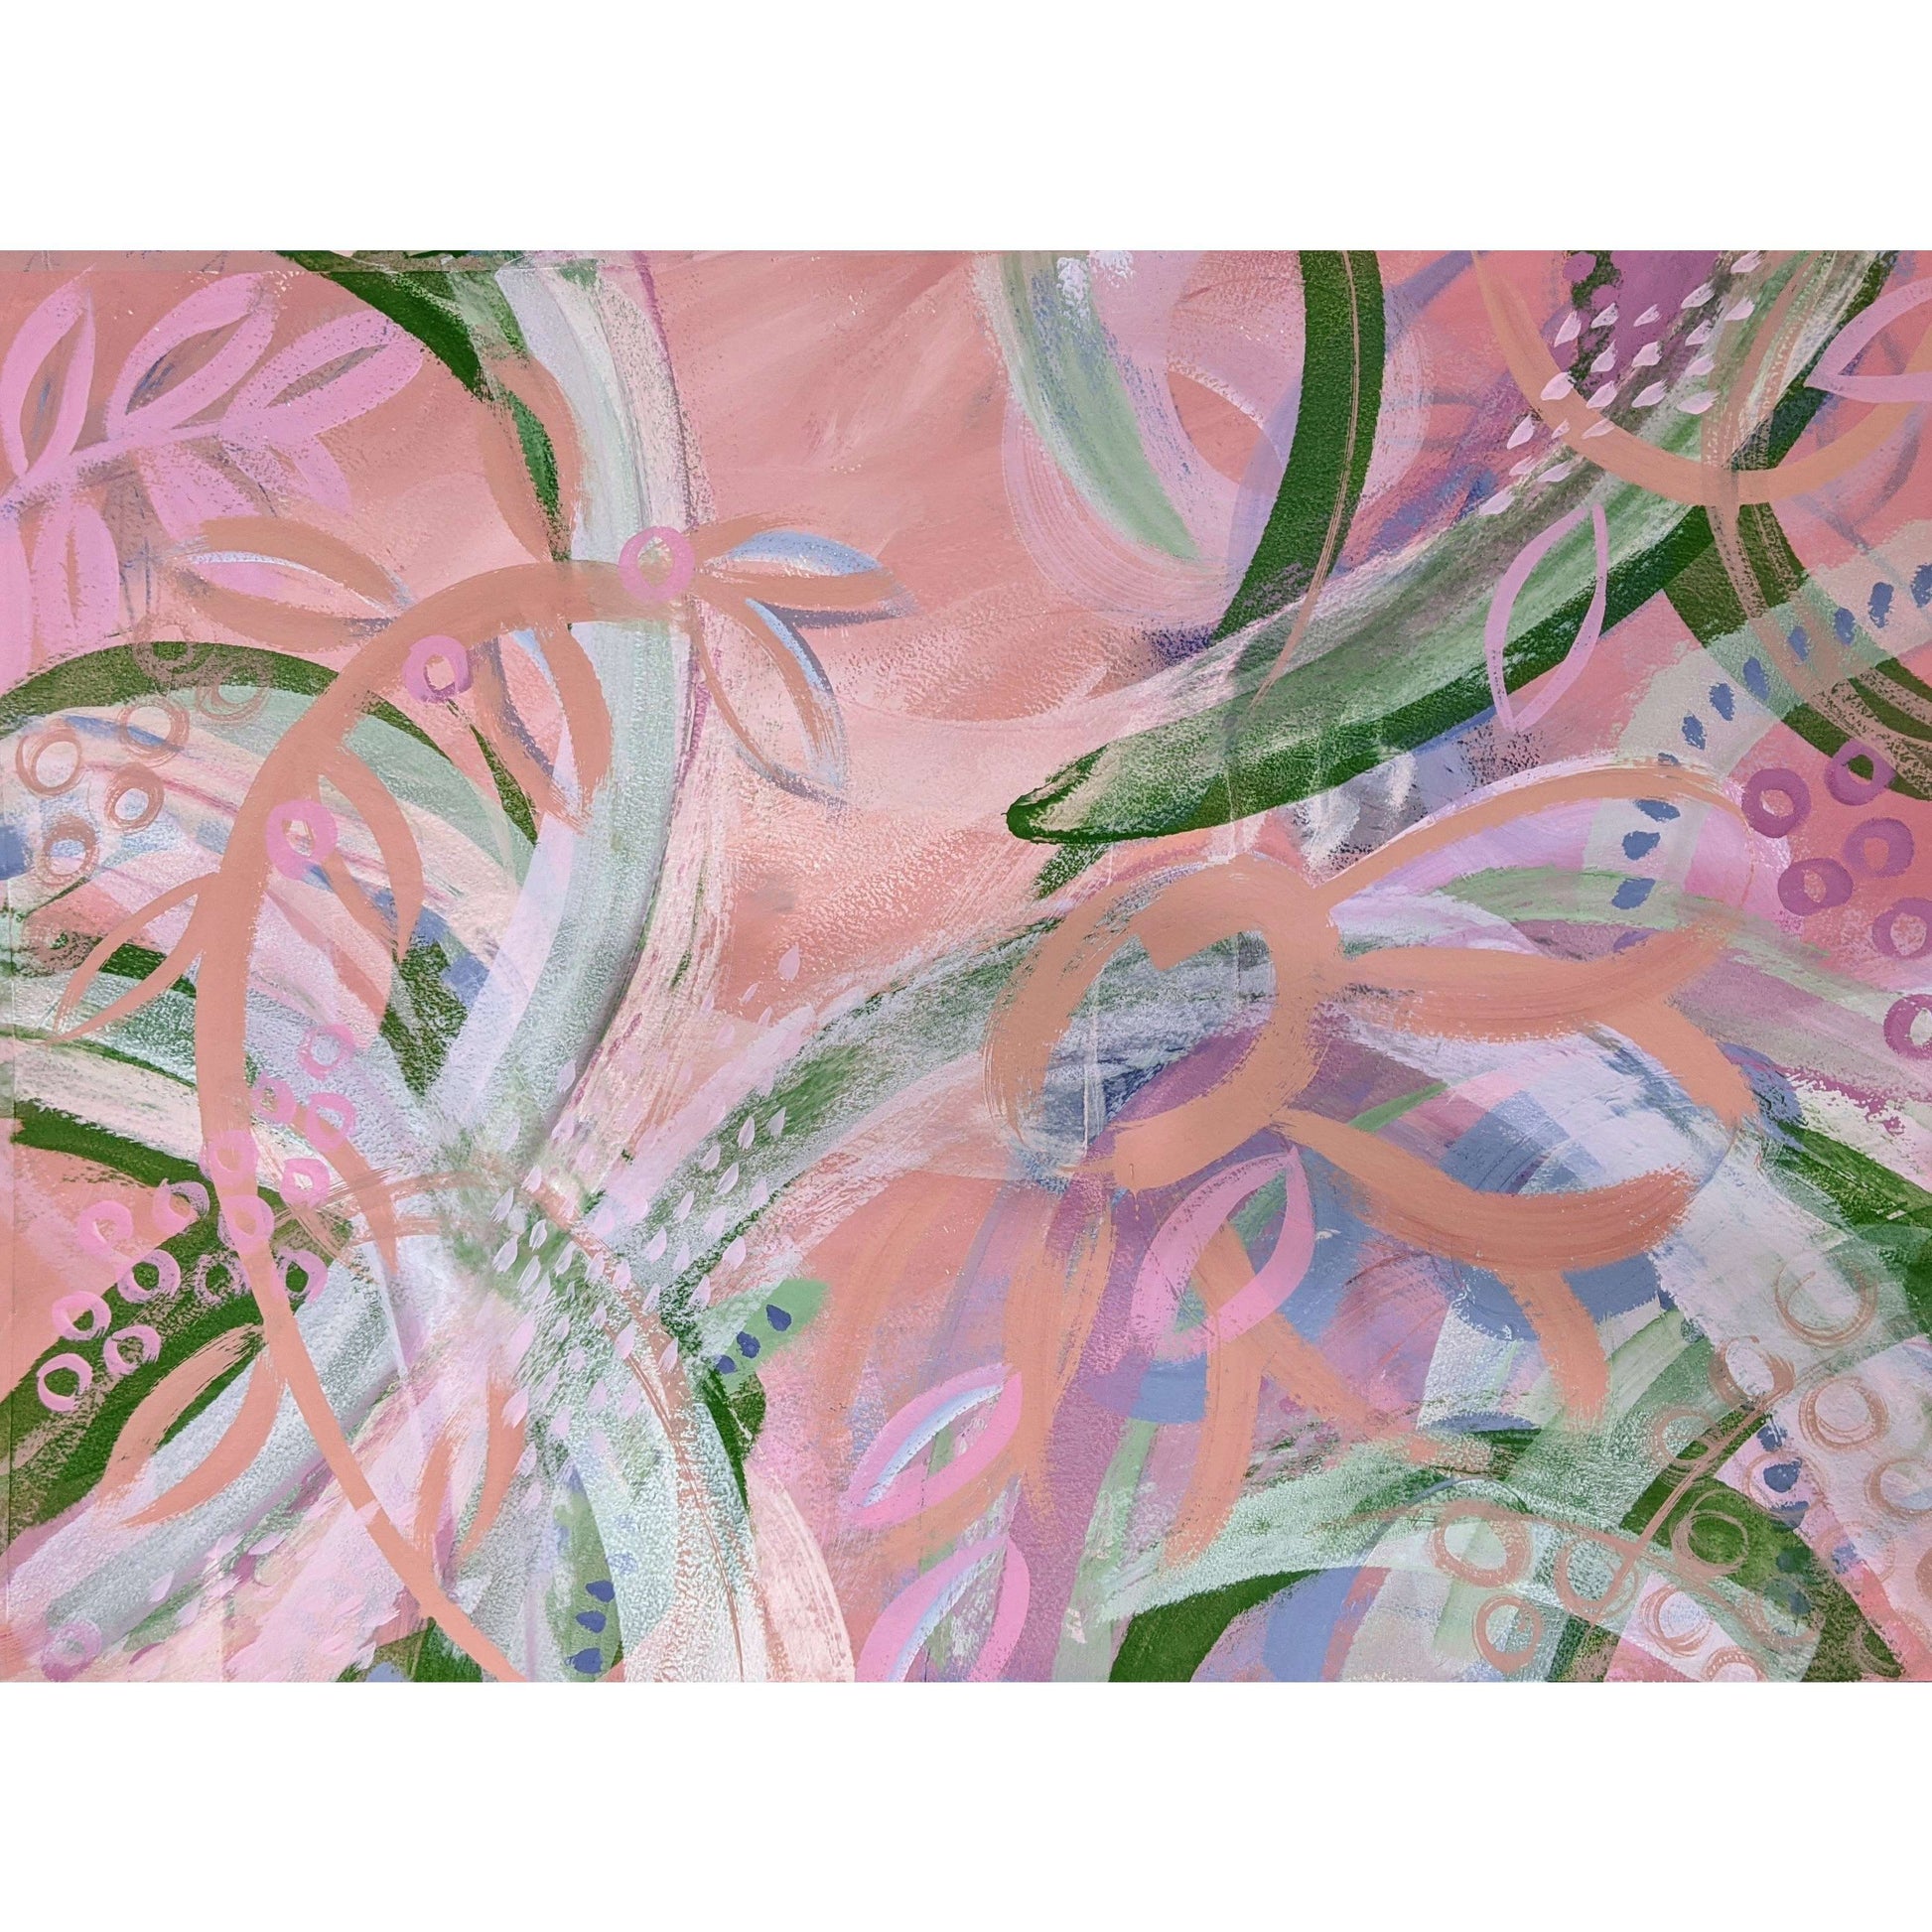 Ros Gervay Creative Original artwork 72cmW x 52.8cmH / Original Painting / Unframed "Flamingo Fields" Original